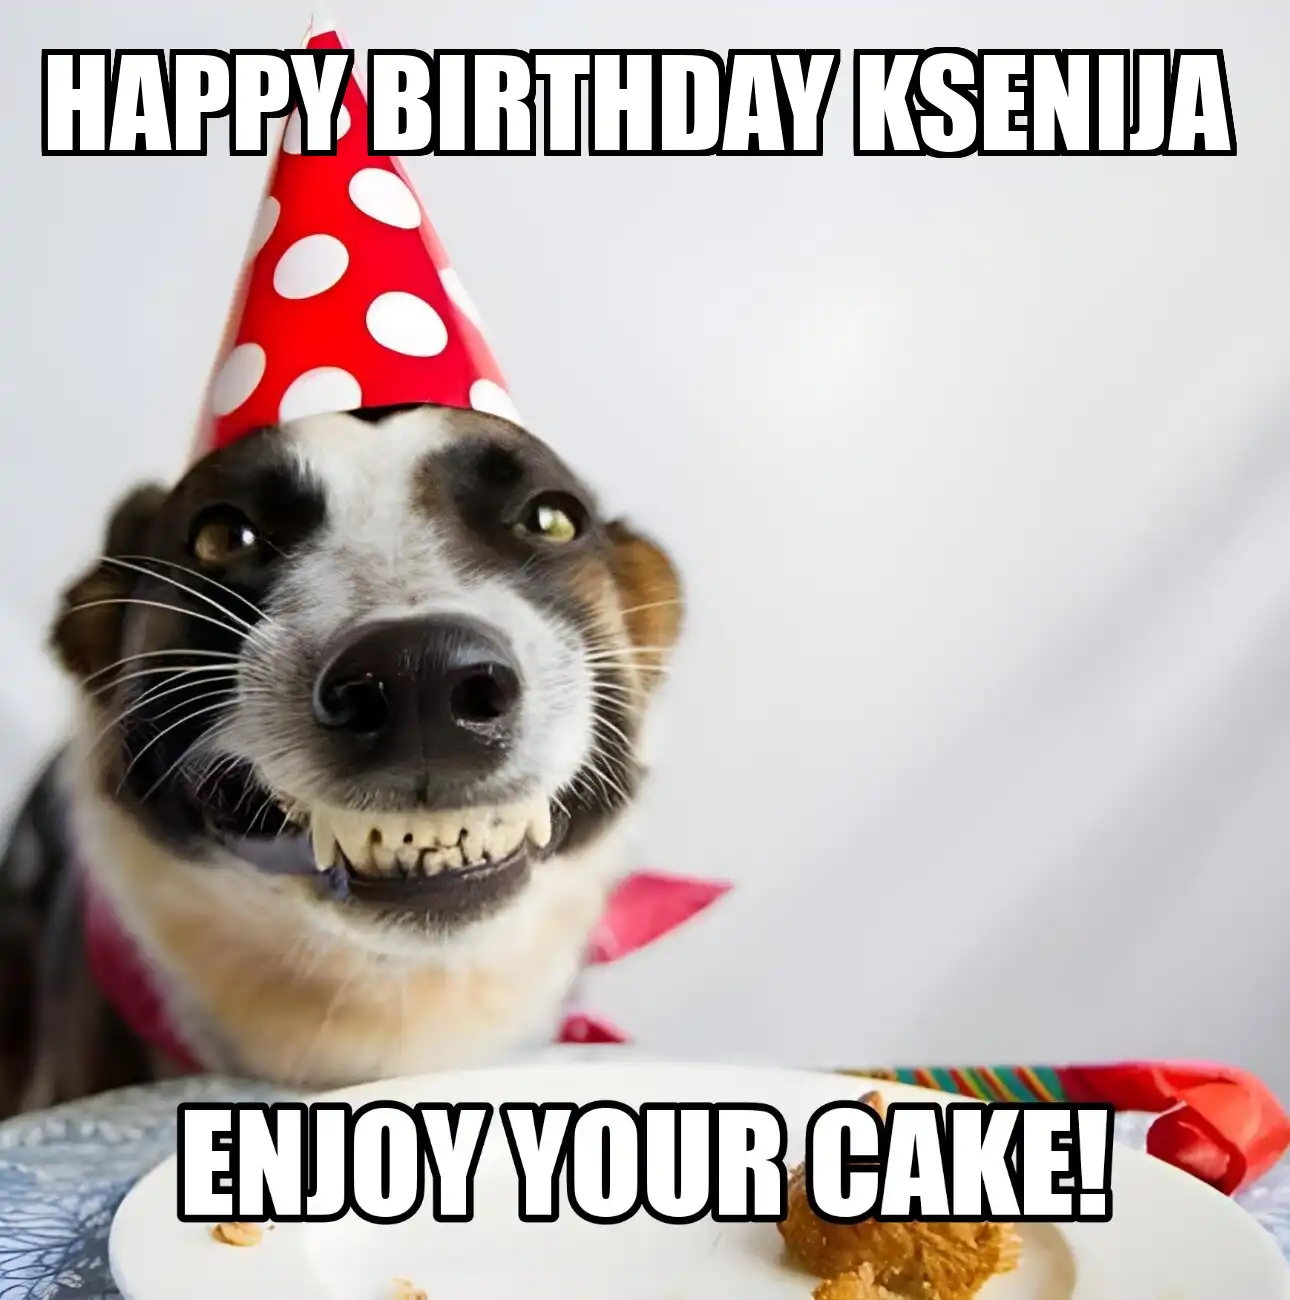 Happy Birthday Ksenija Enjoy Your Cake Dog Meme